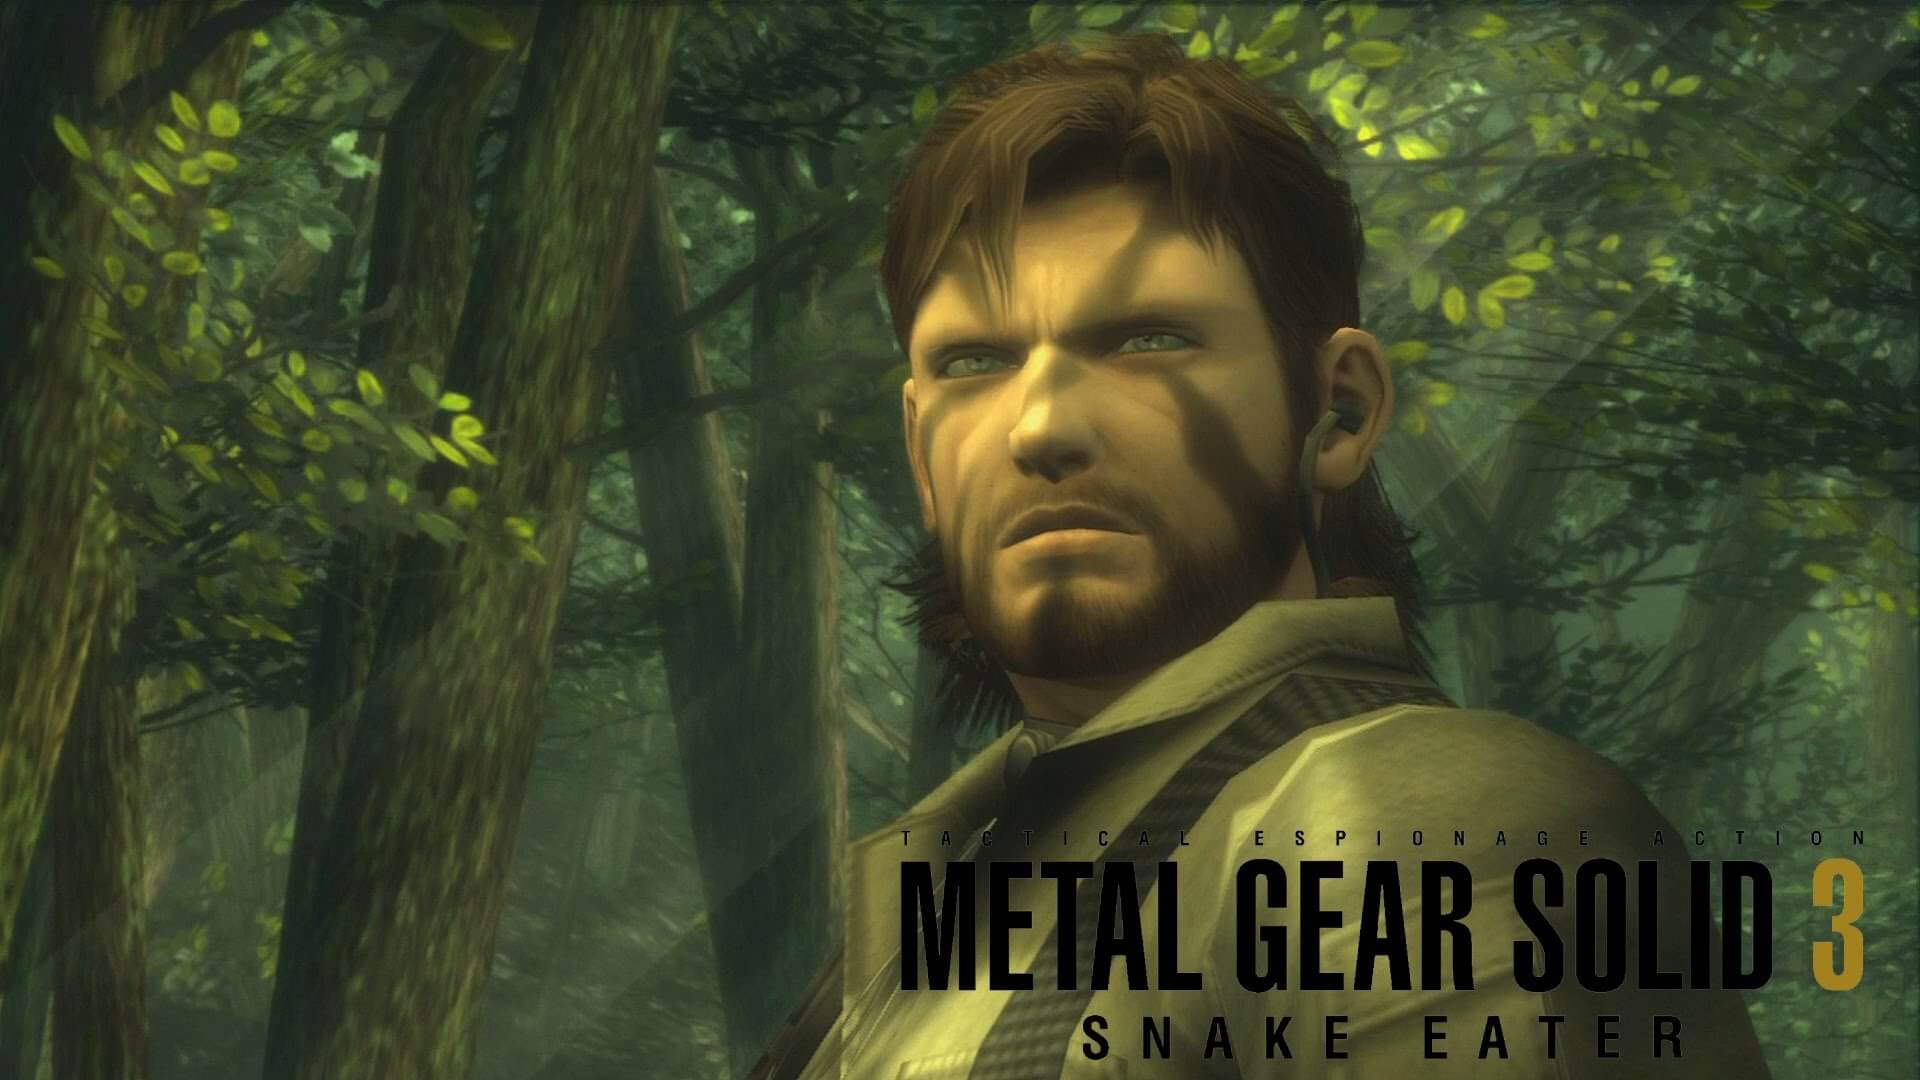 اشاره به پروژه احتمالی Metal Gear Solid در آگهی استودیوی چینی Virtuos 